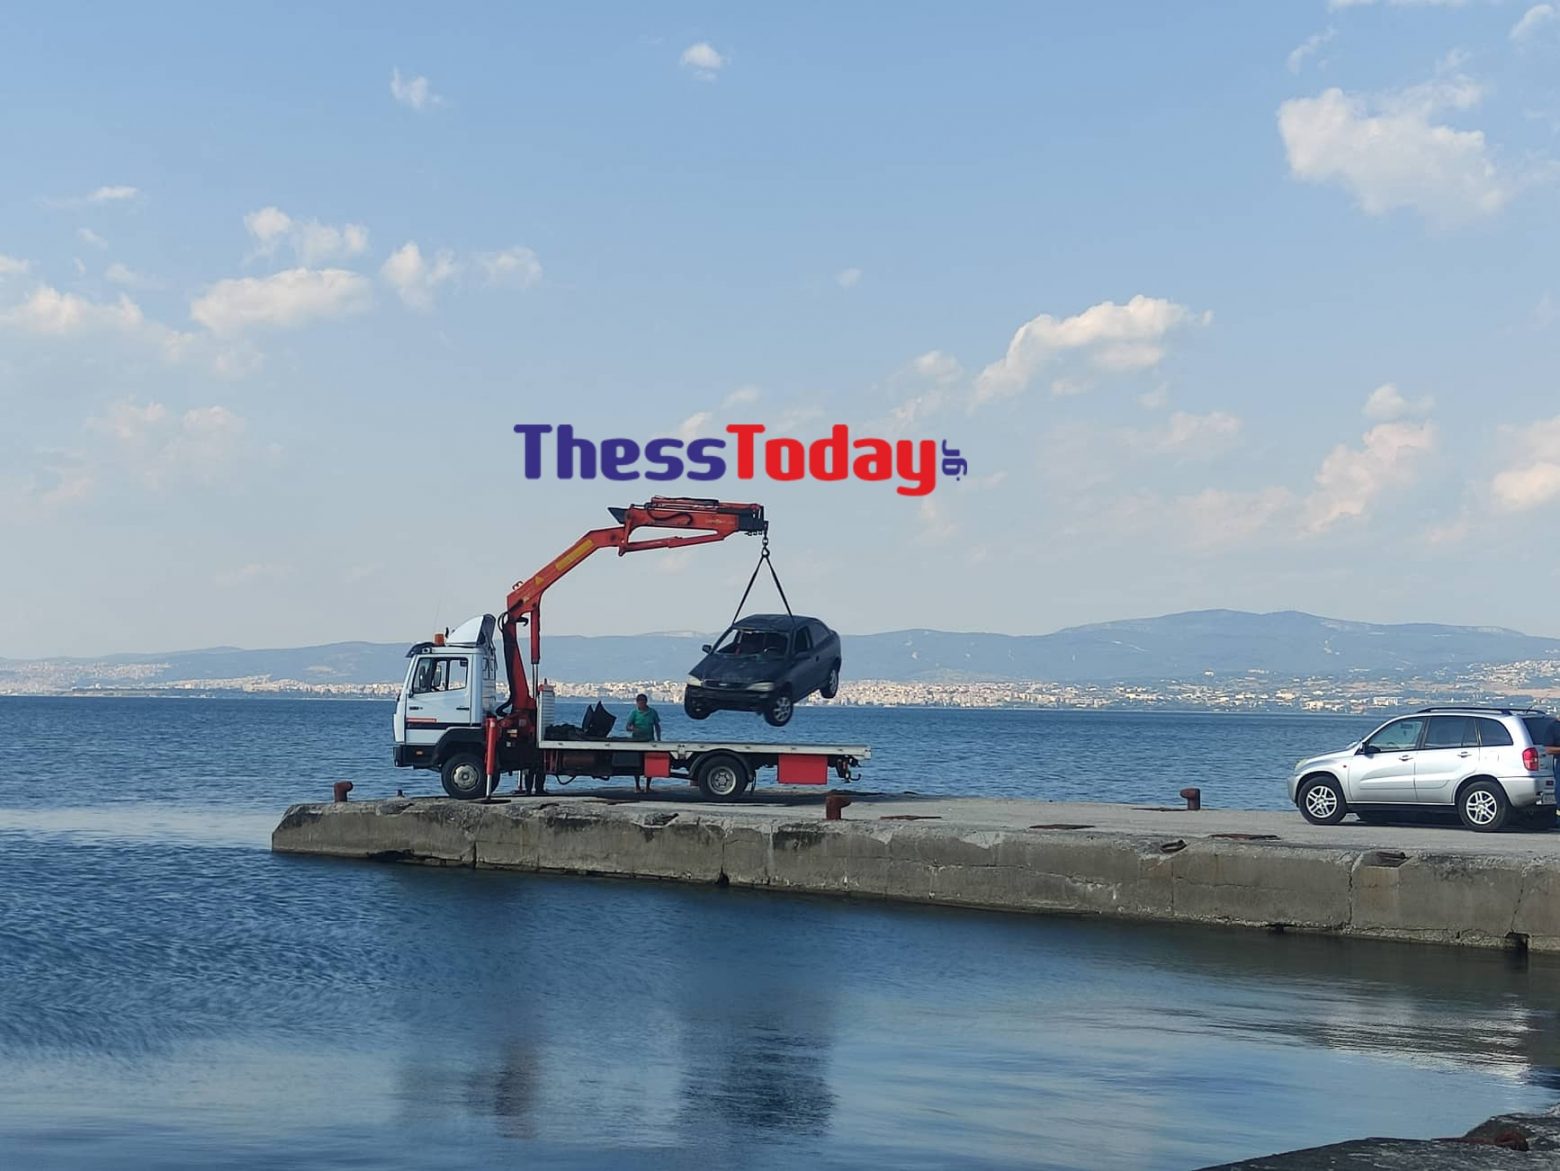 Θεσσαλονίκη: Μητέρα και γιος οι δύο νεκροί - «Έβαλαν χειροπέδες και αυτοκτόνησαν»